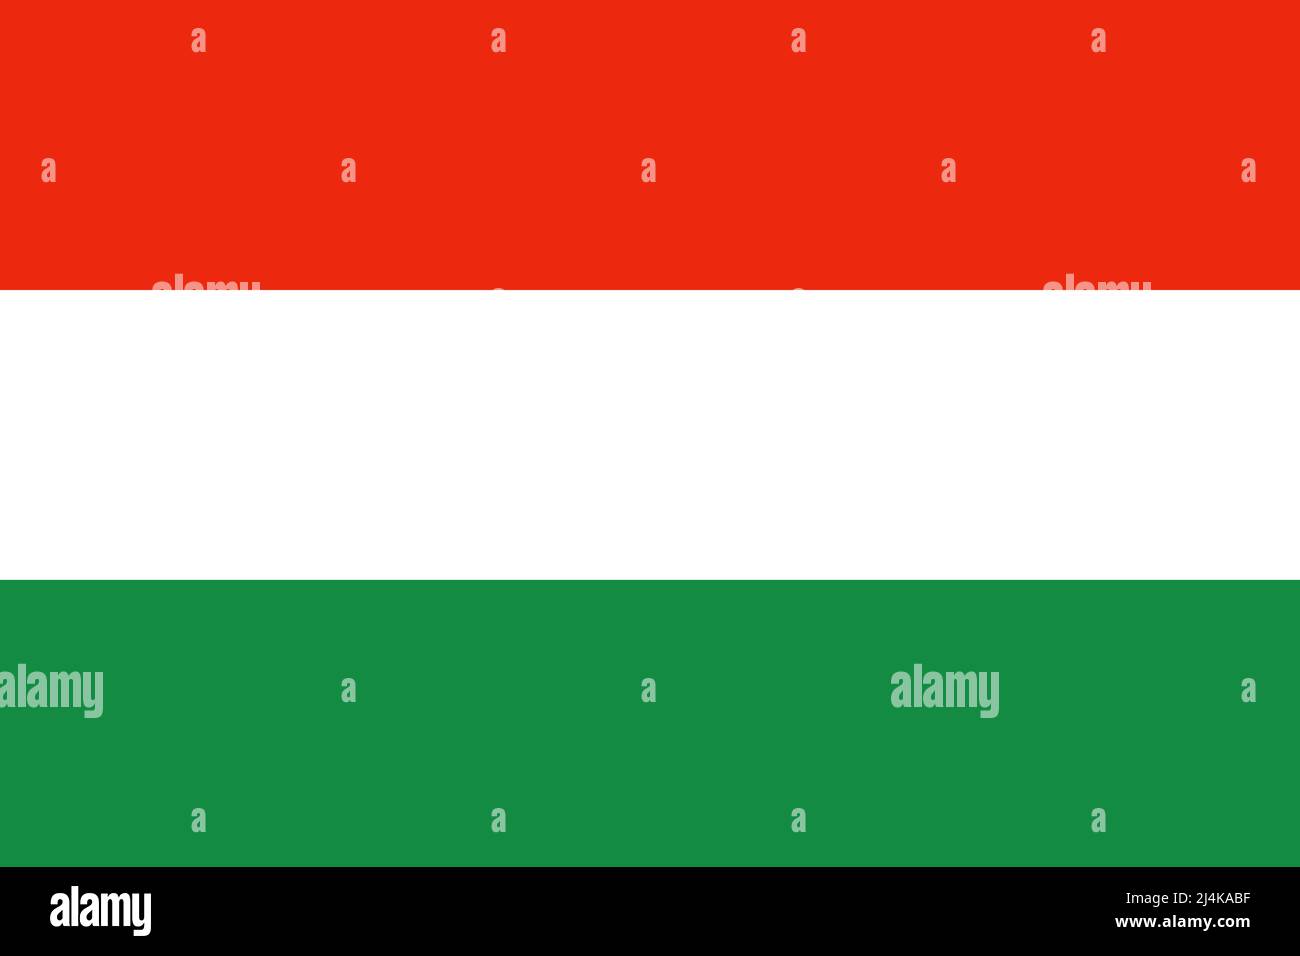 La bandiera rossa, bianca e verde dell'Ungheria. Foto Stock